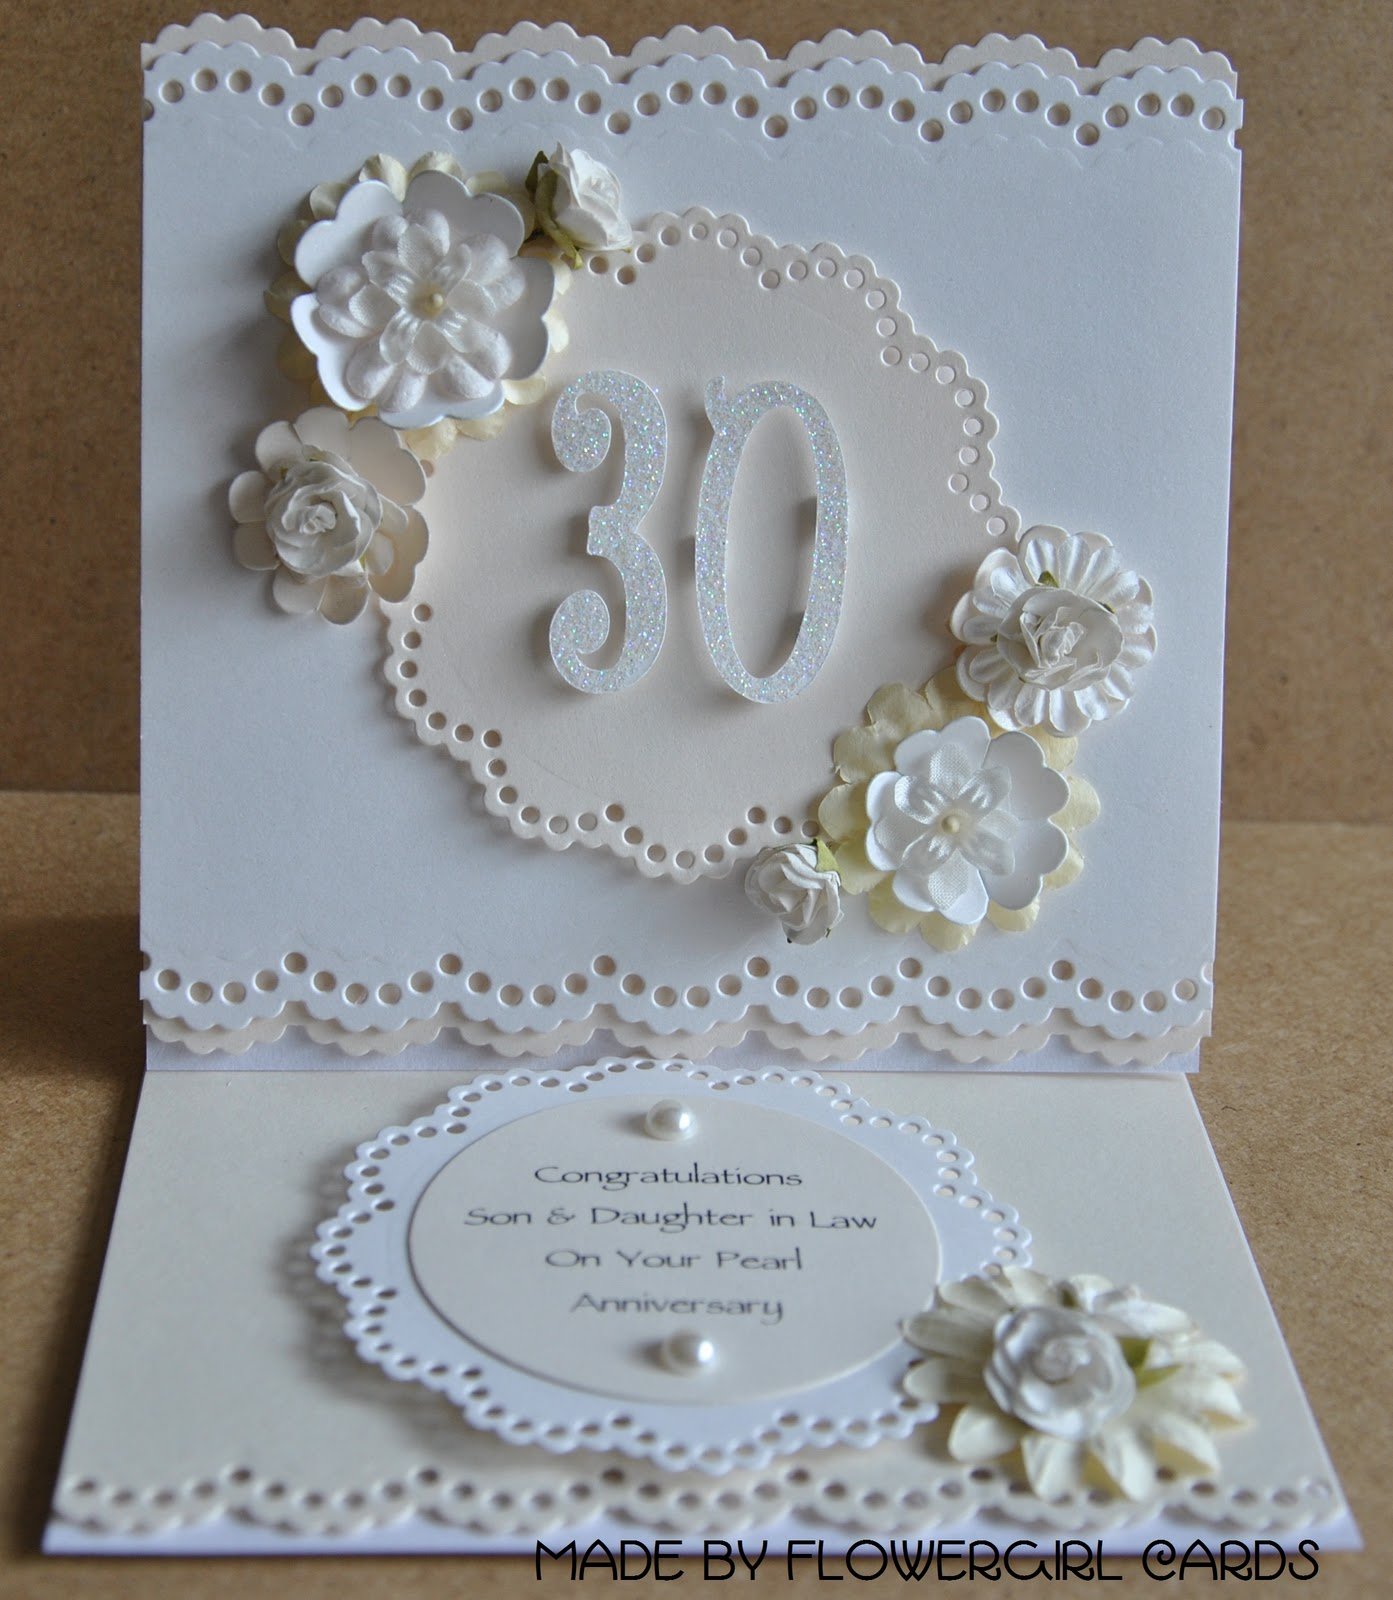 Поздравление с 30 свадьбы открытка. Жемчужная свадьба. С годовщиной свадьбы 30 лет. Свадебная открытка. Поздравляю с жемчужной свадьбой.